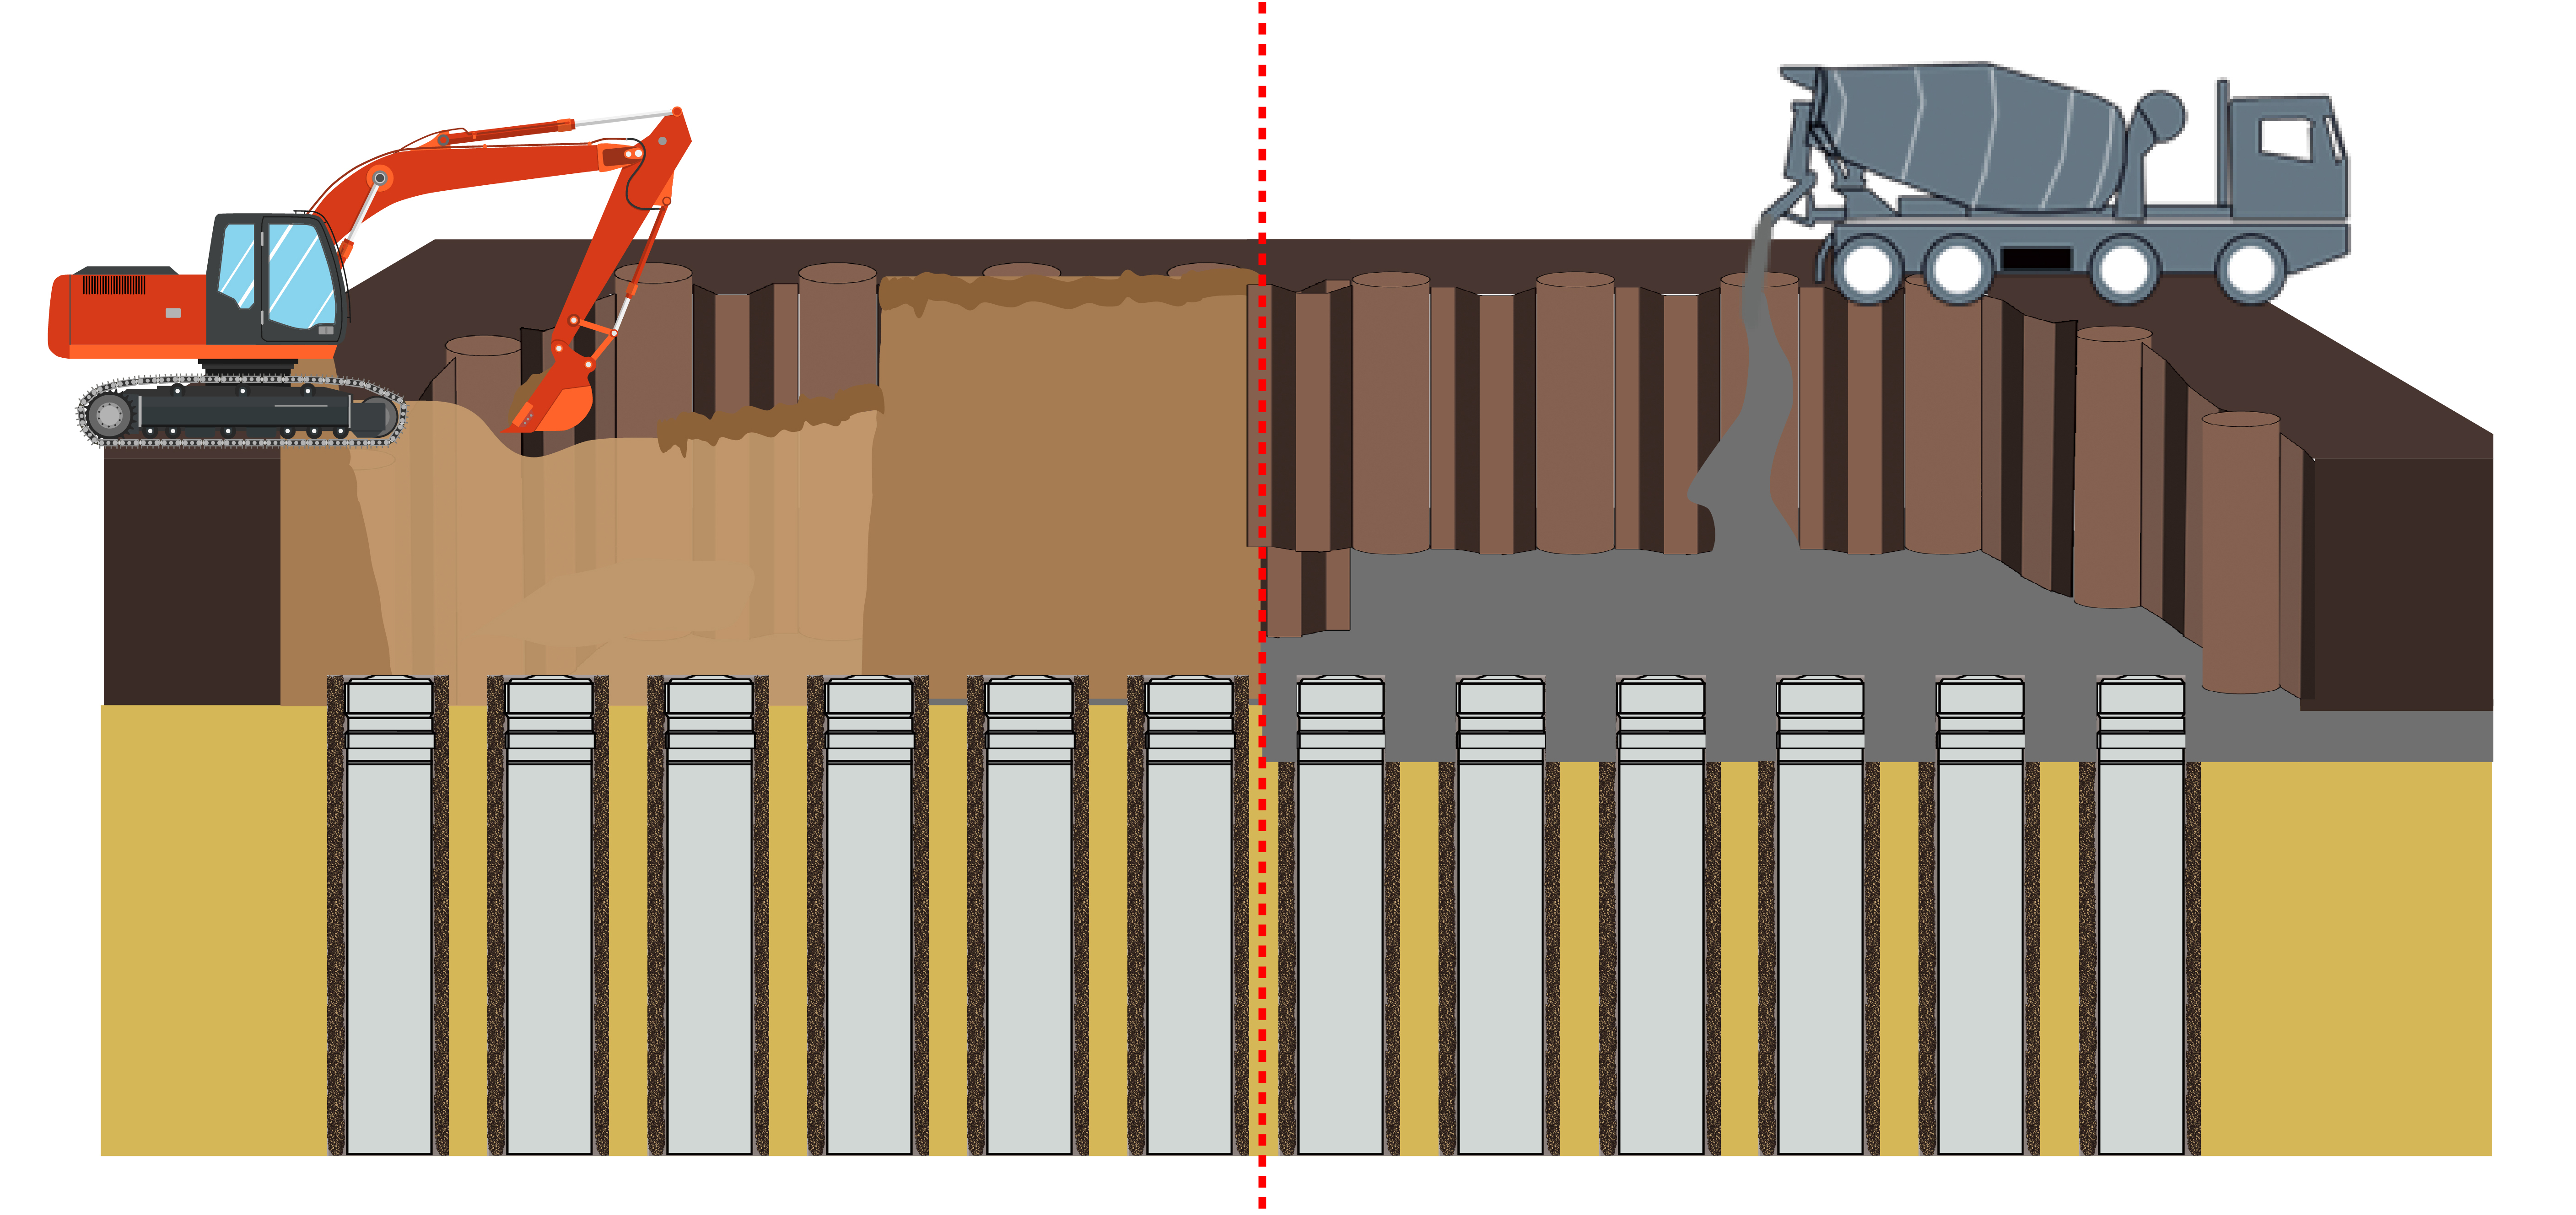 混凝土预制桩预埋工法之荷兰应用： 冲击振动组合法打桩 – 无需进行桩的顶部切除